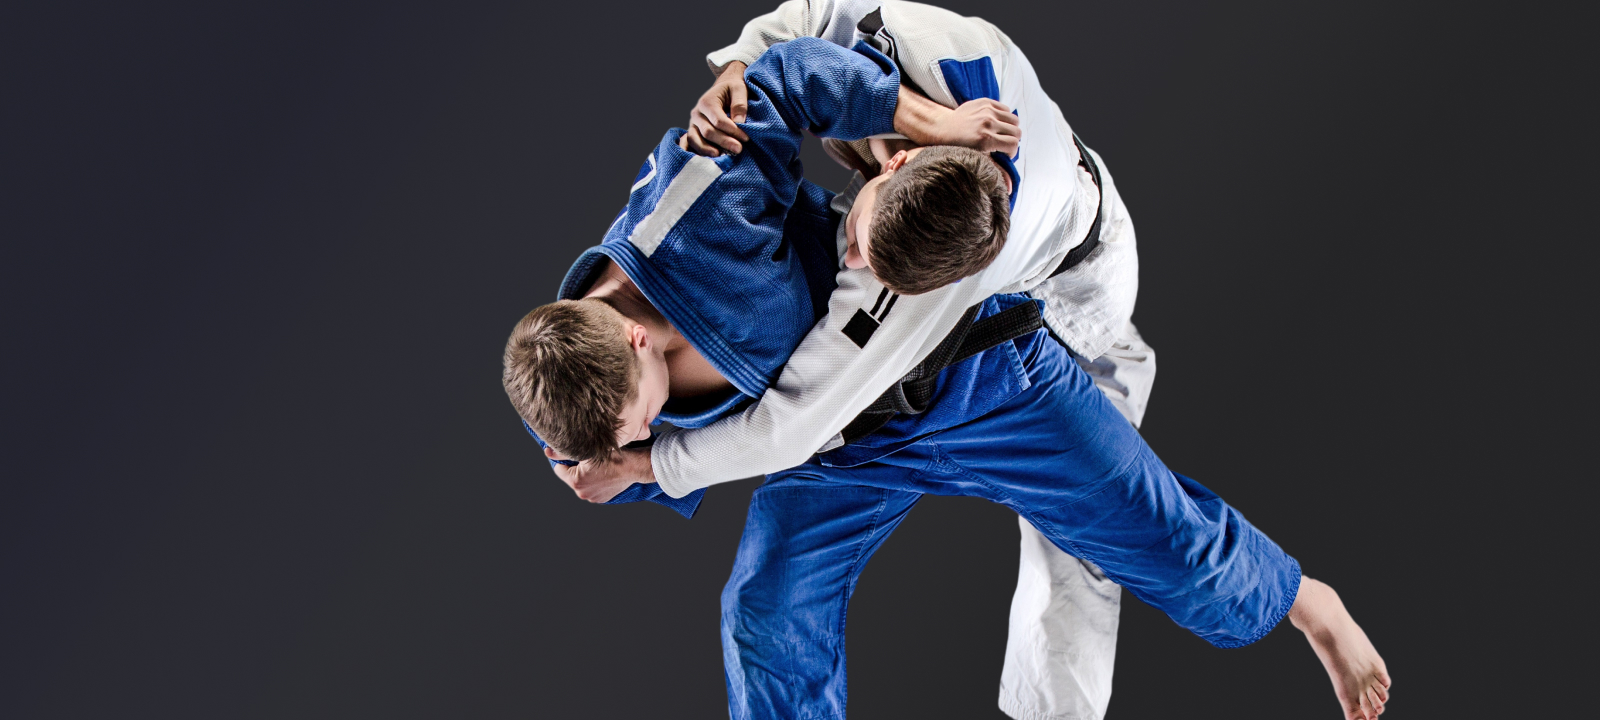 Get the #1 tournament software for Judo